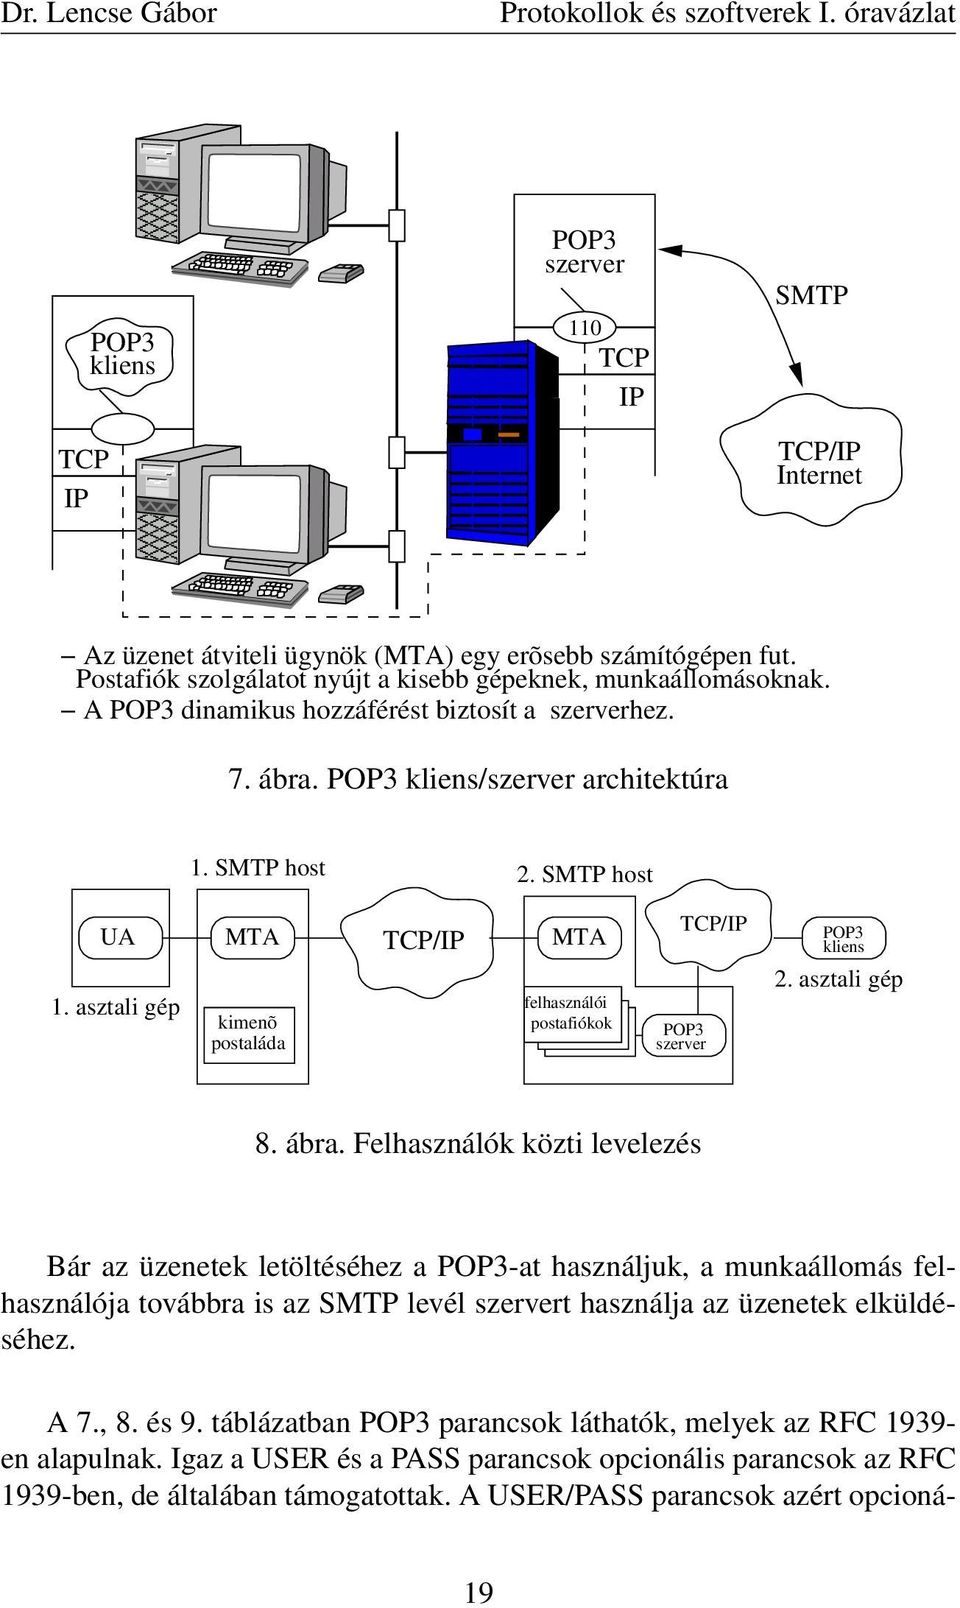 asztali gép MTA kimenõ postaláda TCP/IP MTA felhasználói postafiókok TCP/IP POP3 szerver POP3 kliens 2. asztali gép 8. ábra.